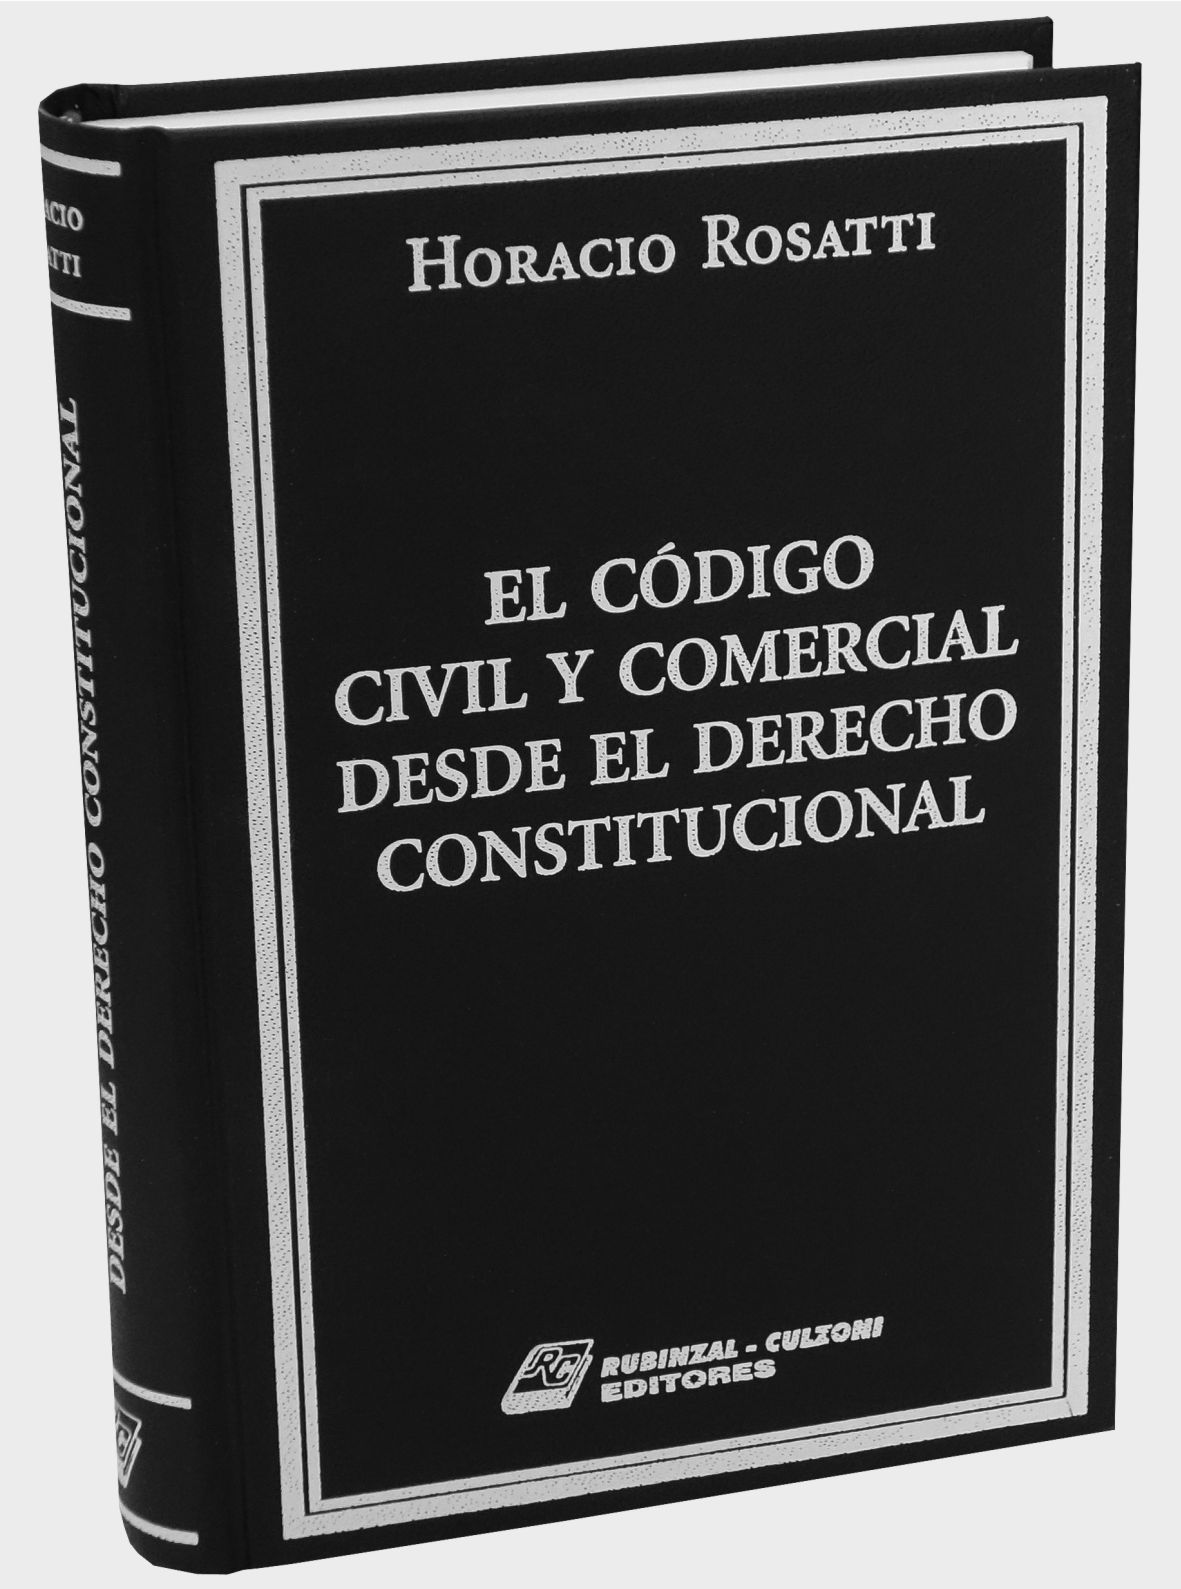 El Código Civil y Comercial desde el Derecho Constitucional.